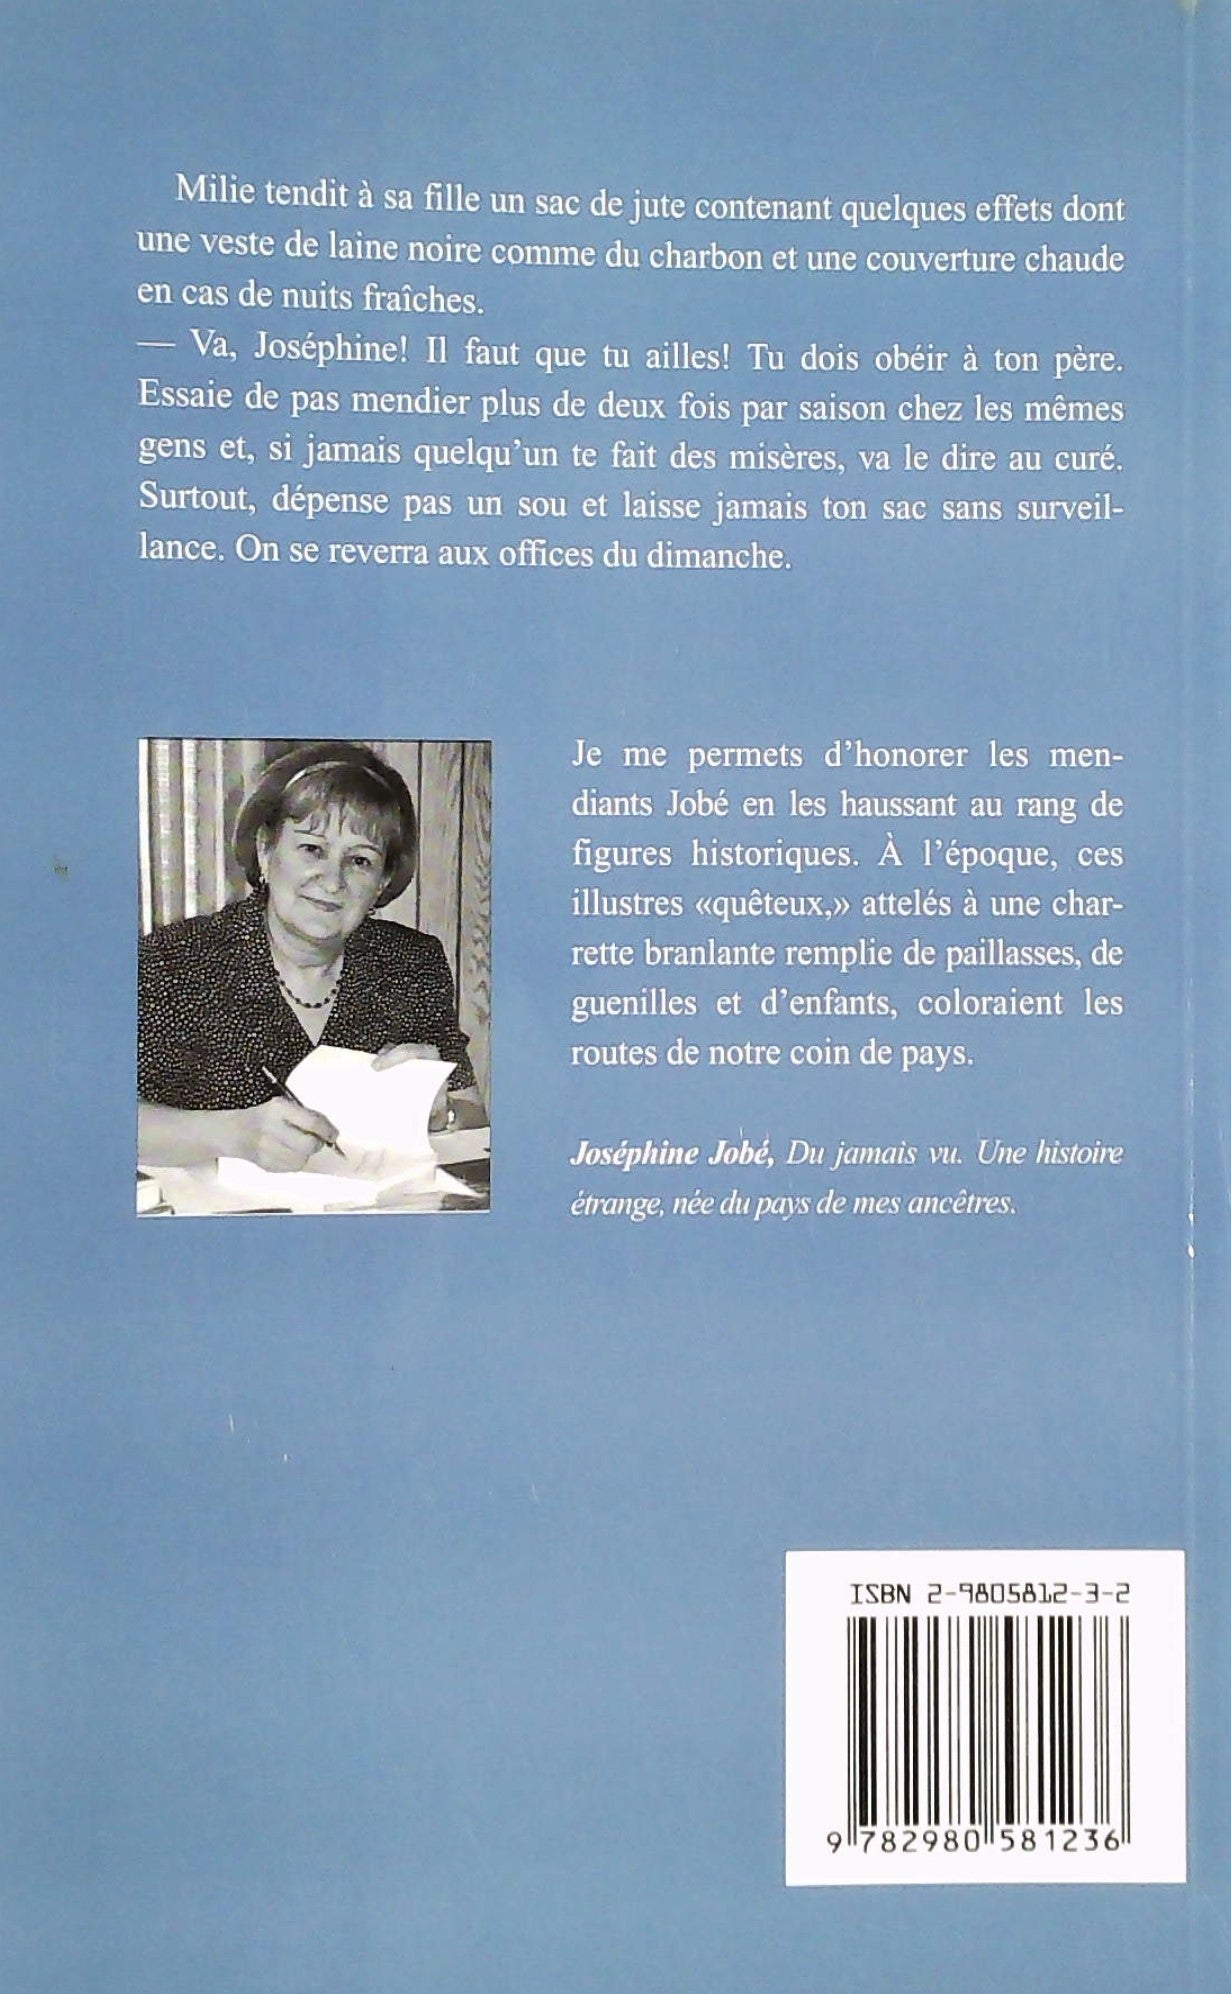 Mendiante # 1 : Joséphine Jobé (Micheline Dalpé)